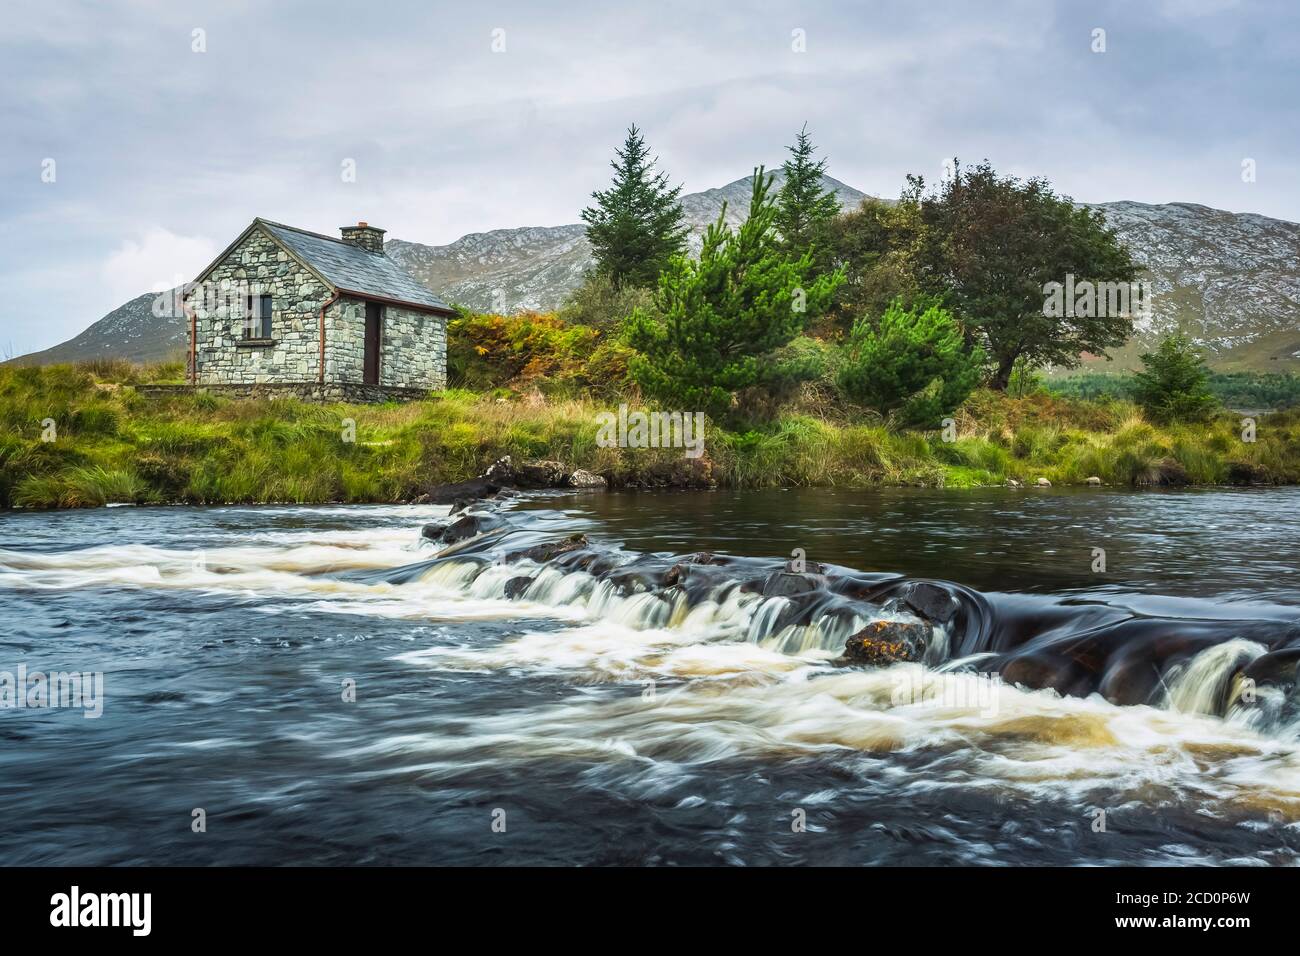 Kleine Steinfischer Hütte am Ufer eines kleinen Flusses mit Bergen im Hintergrund an einem bewölkten Tag; Connemara, County Galway, Irland Stockfoto